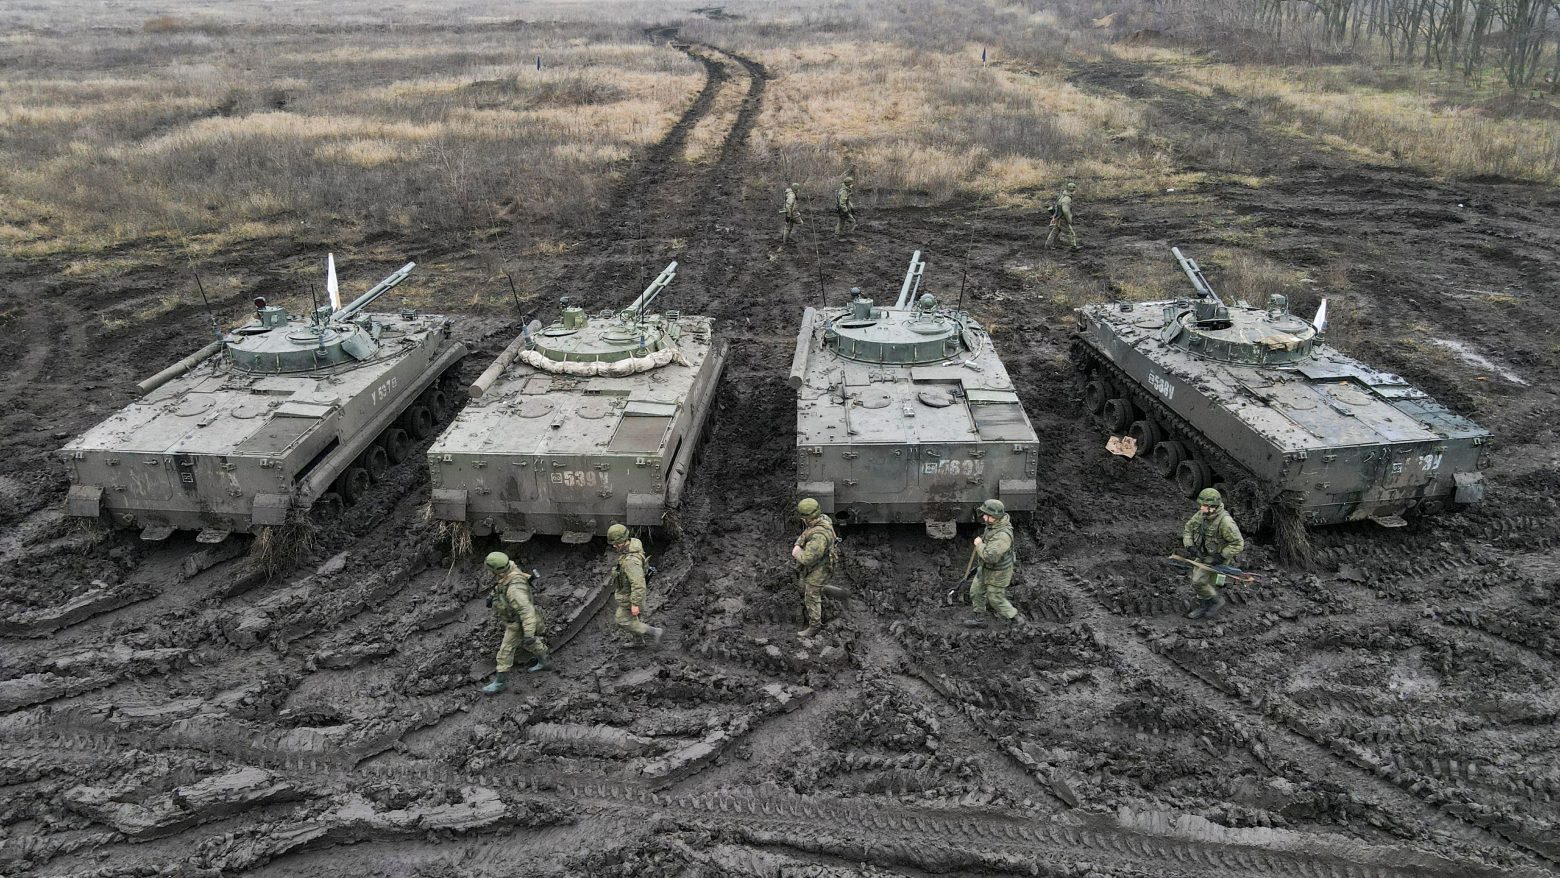 Η μεγαλύτερη συγκέντρωση στρατευμάτων στην Ανατολική Ευρώπη μετά τον Ψυχρό Πόλεμο